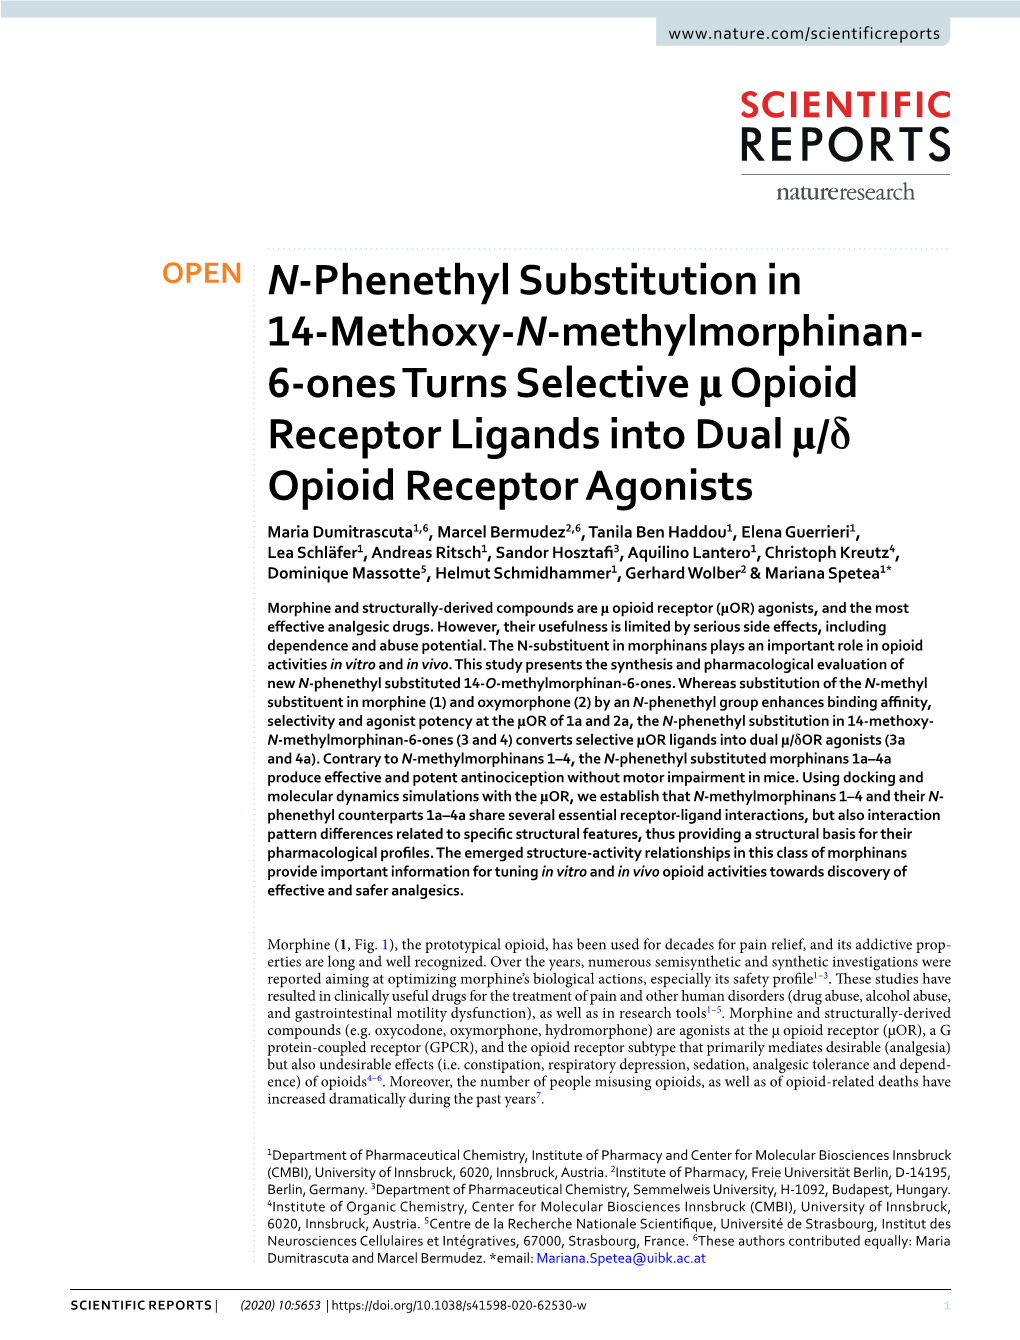 N-Phenethyl Substitution in 14-Methoxy-N-Methylmorphinan